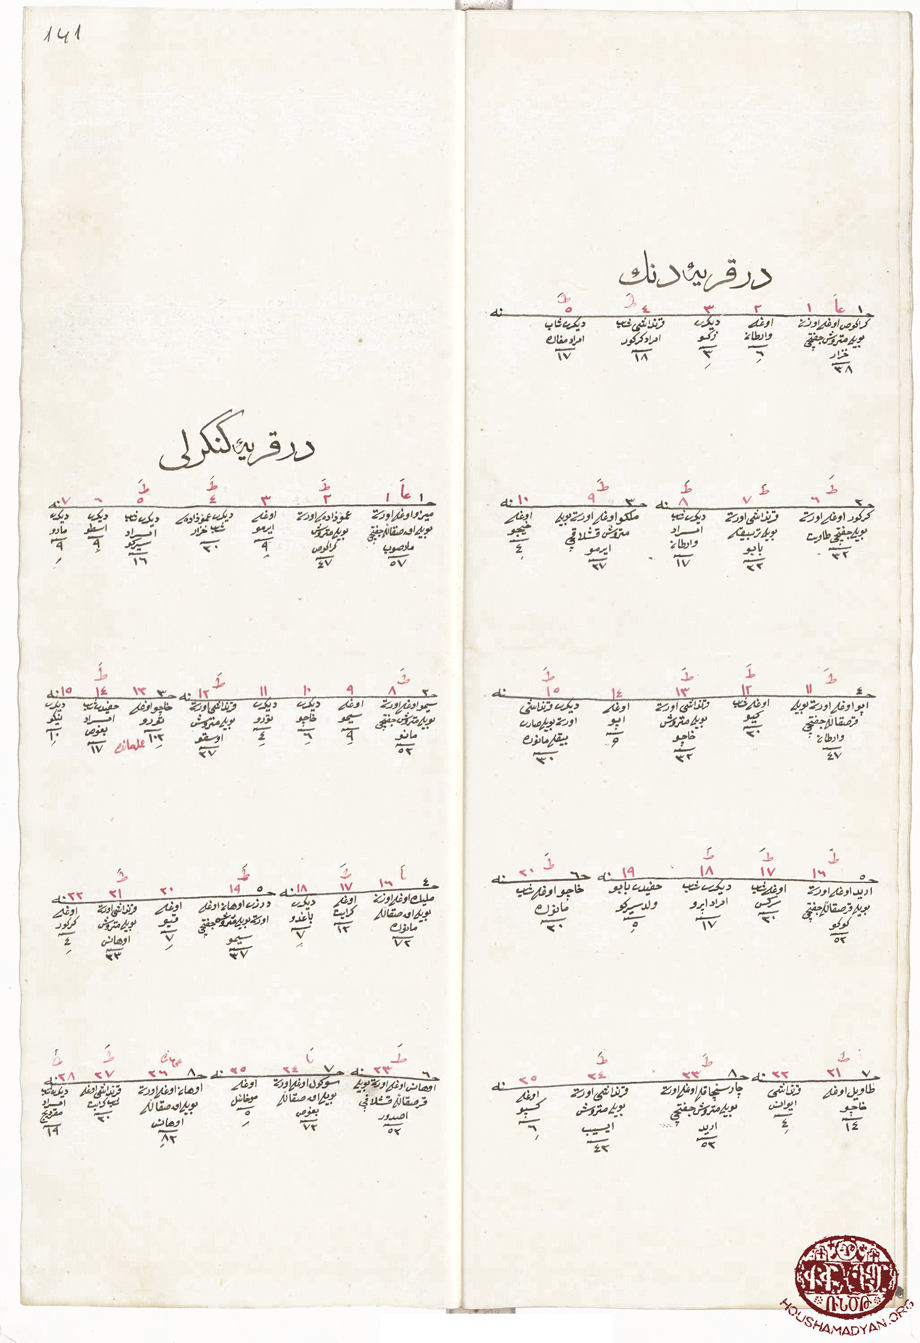 Çarsancak kazası Denk köyü 1256 tarihli (1840) Osmanlı nüfus sayımı